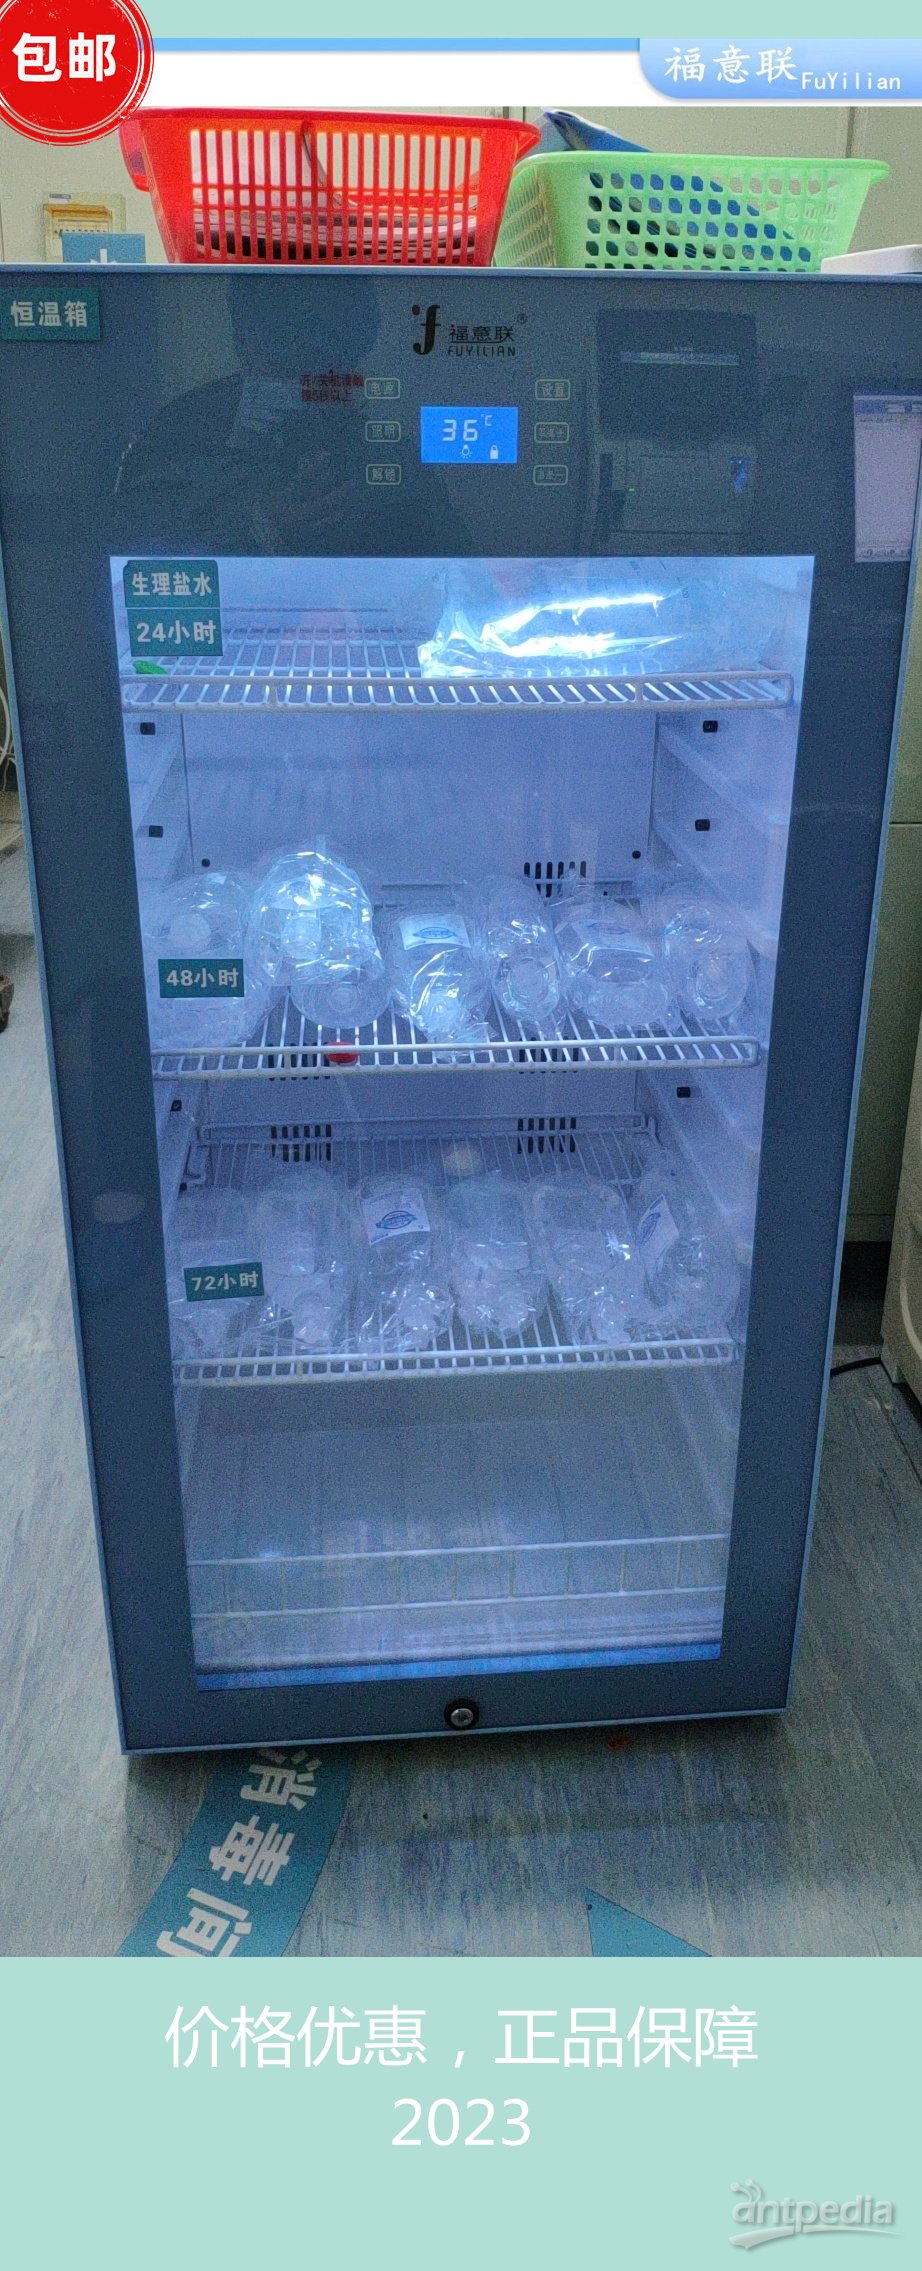 动物实验室普通饲养(小鼠)饲养箱、转基因小鼠饲养笼箱柜FYL-YS-430L